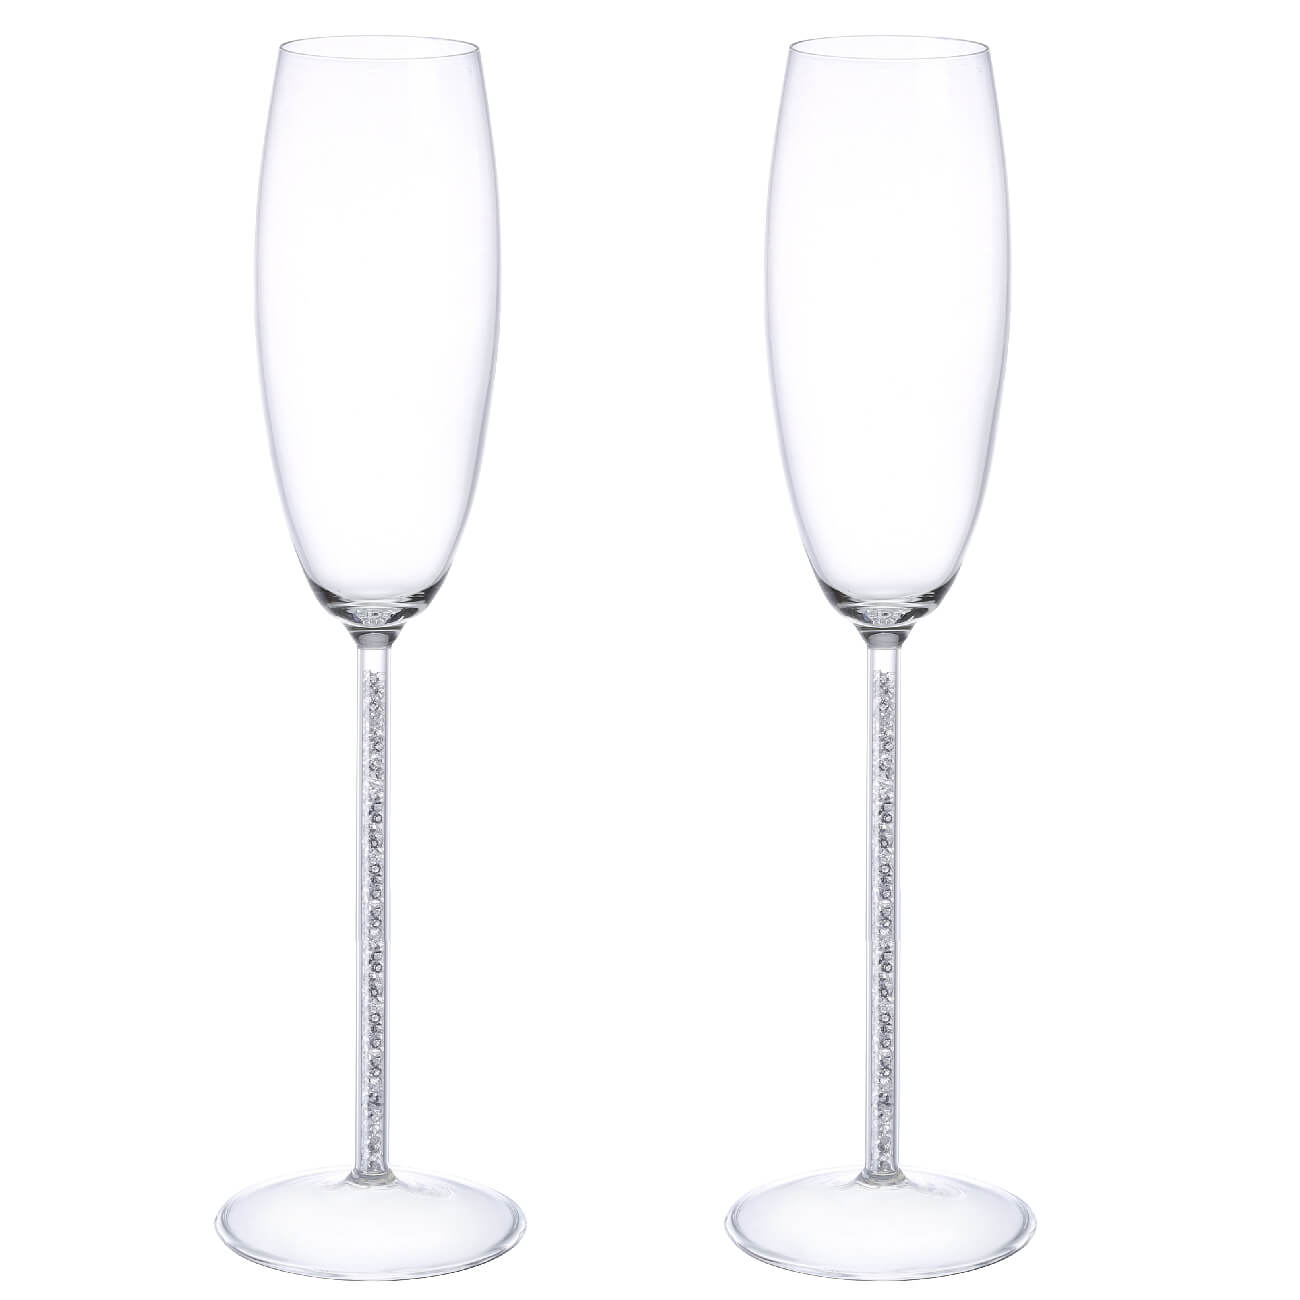 Бокал для шампанского, 180 мл, 2 шт, стекло/стразы, Crystal decor gloria бокалы для шампанского 2 шт